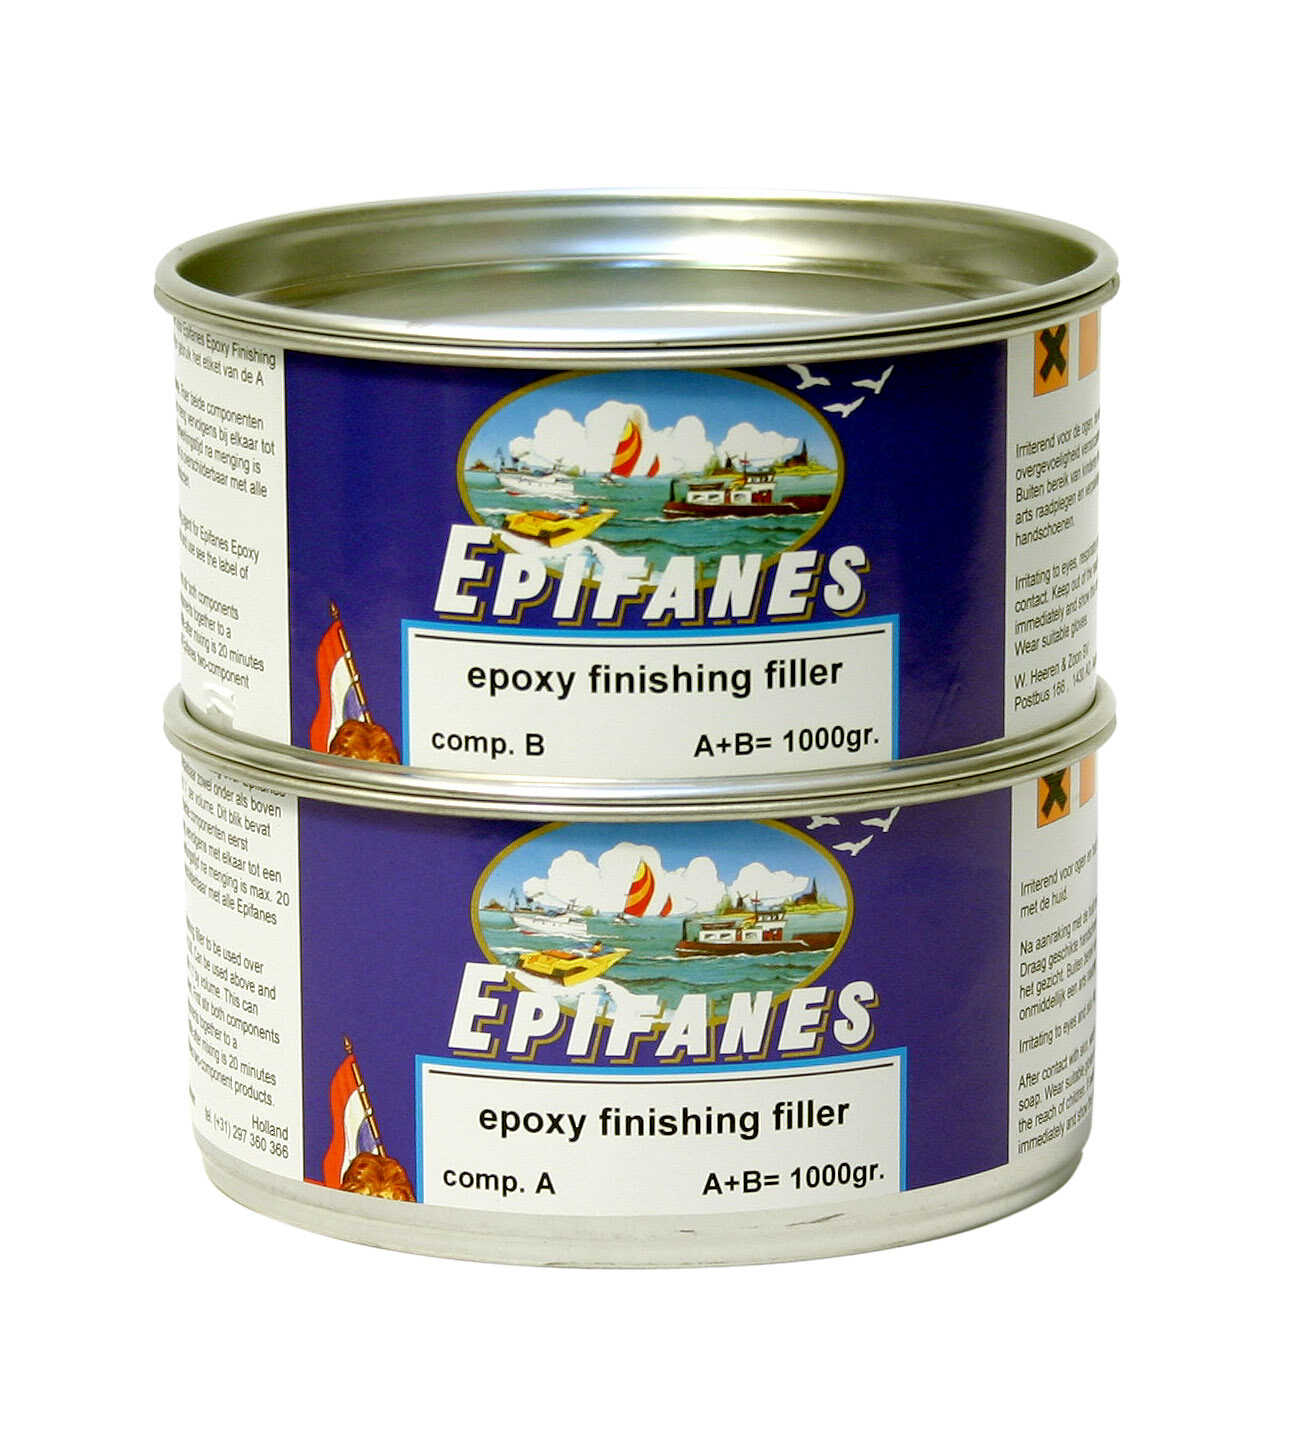 Epifanes Epoxy Finishing Filler